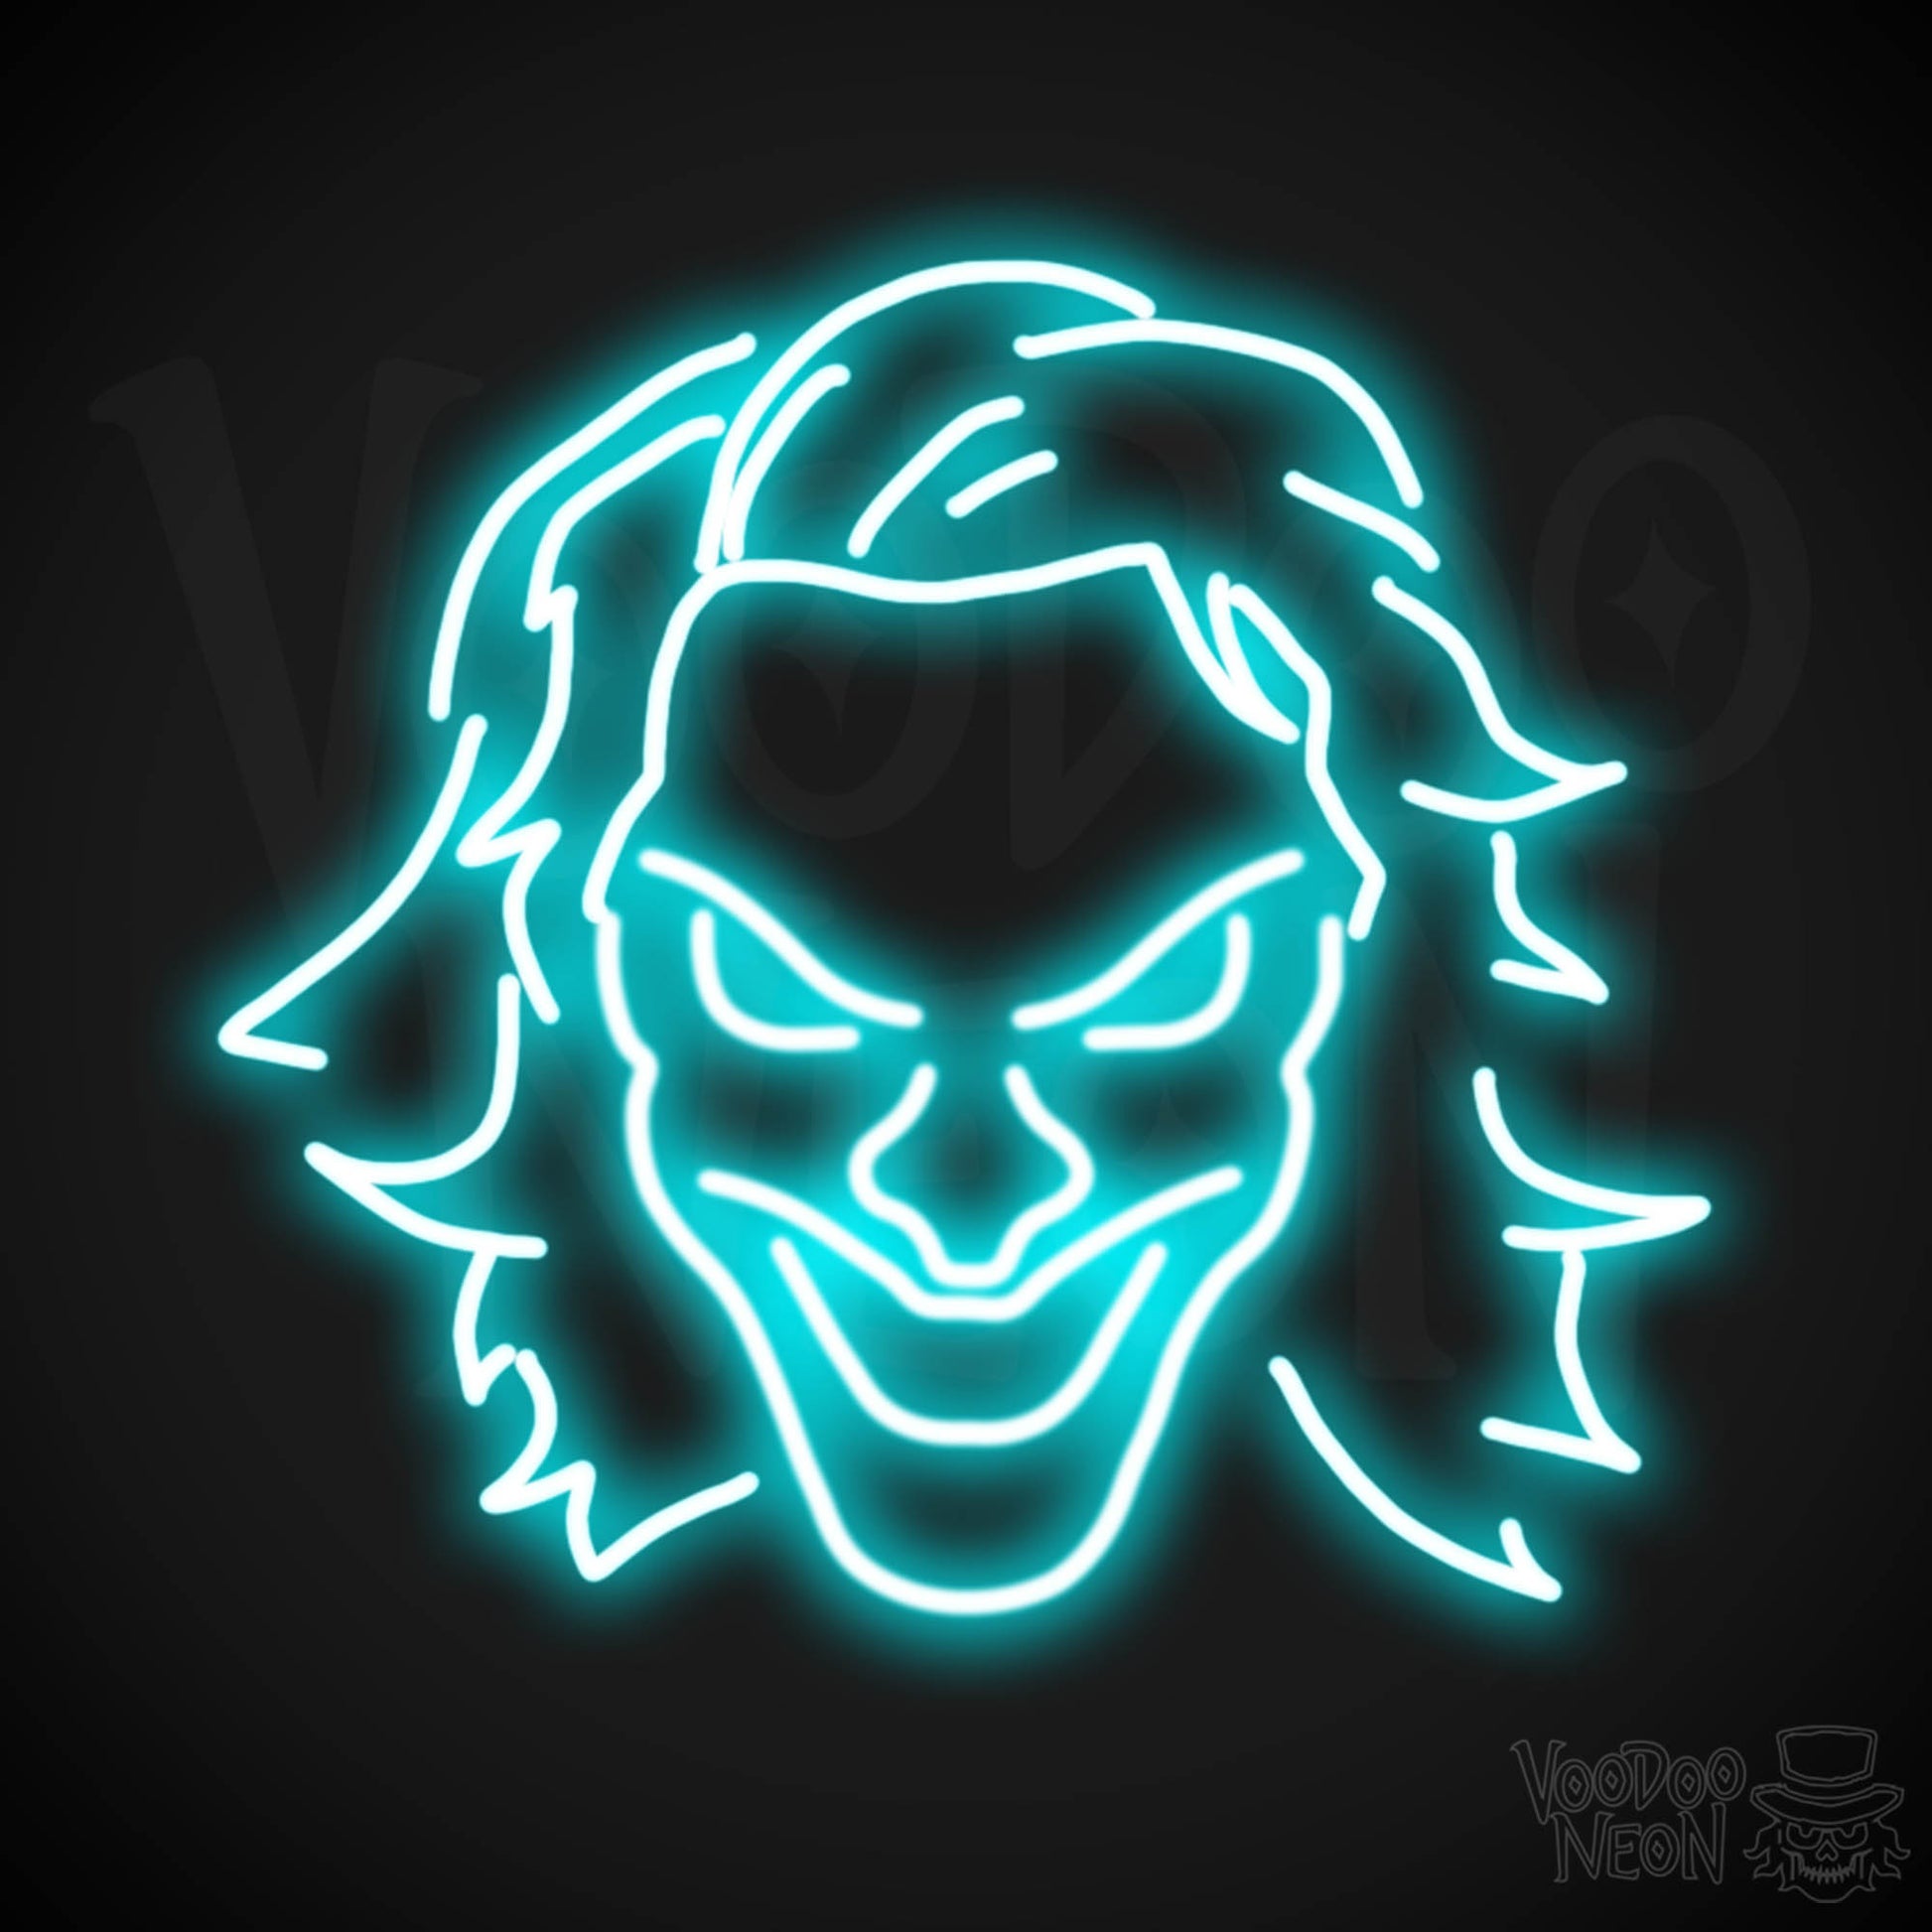 Joker Neon Sign - Neon Joker Sign - Joker LED Wall Art - Color Ice Blue